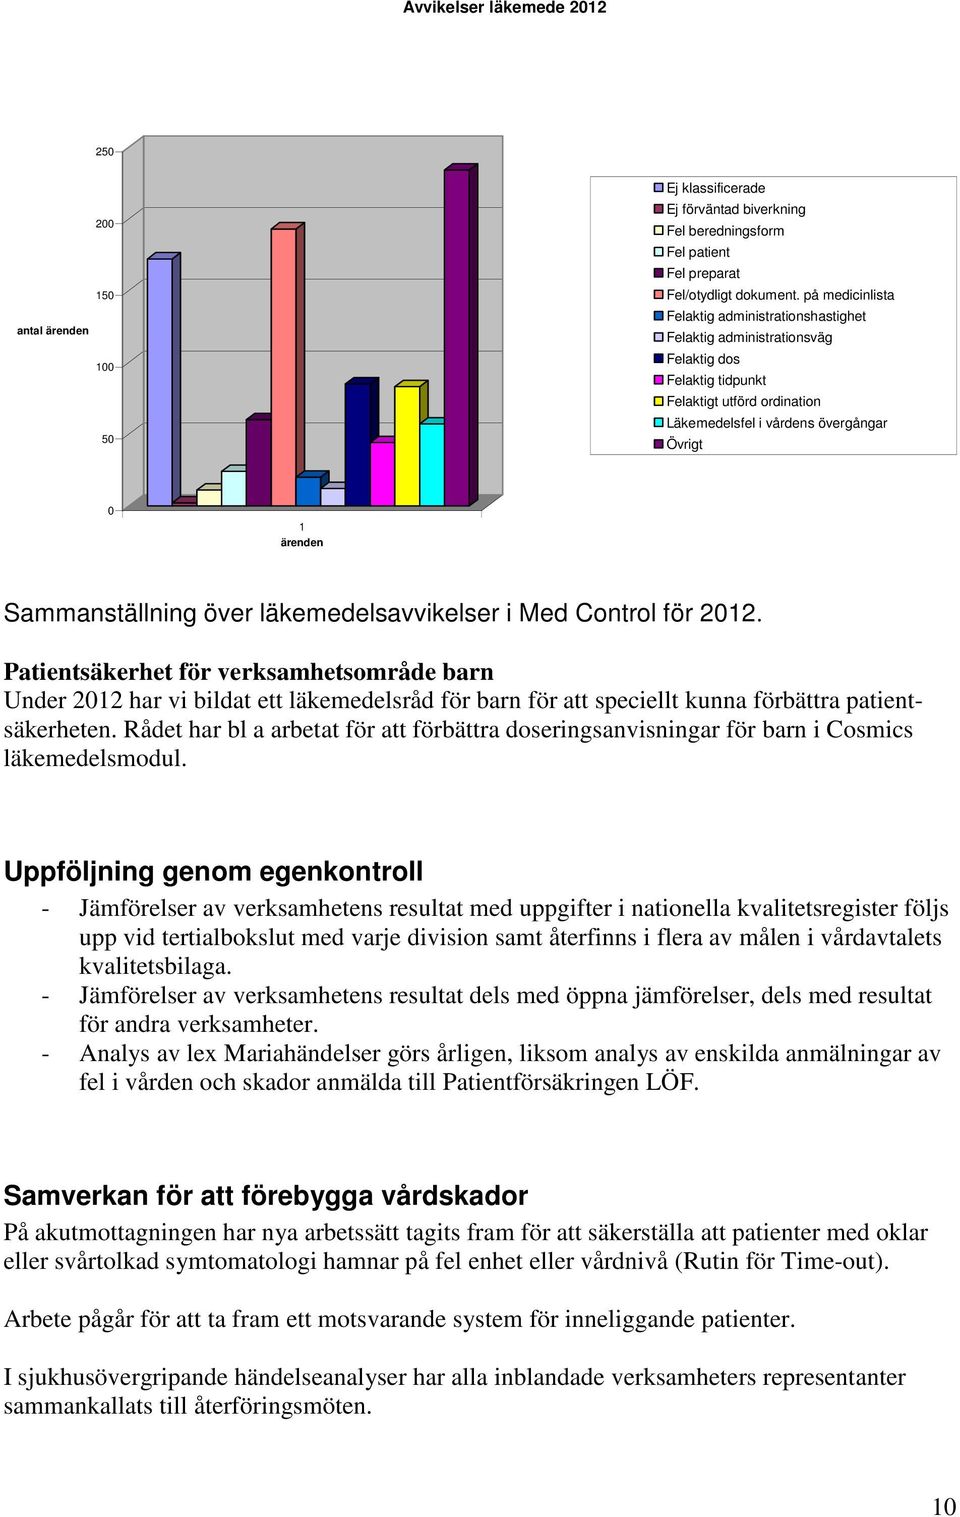 Sammanställning över läkemedelsavvikelser i Med Control för 2012.